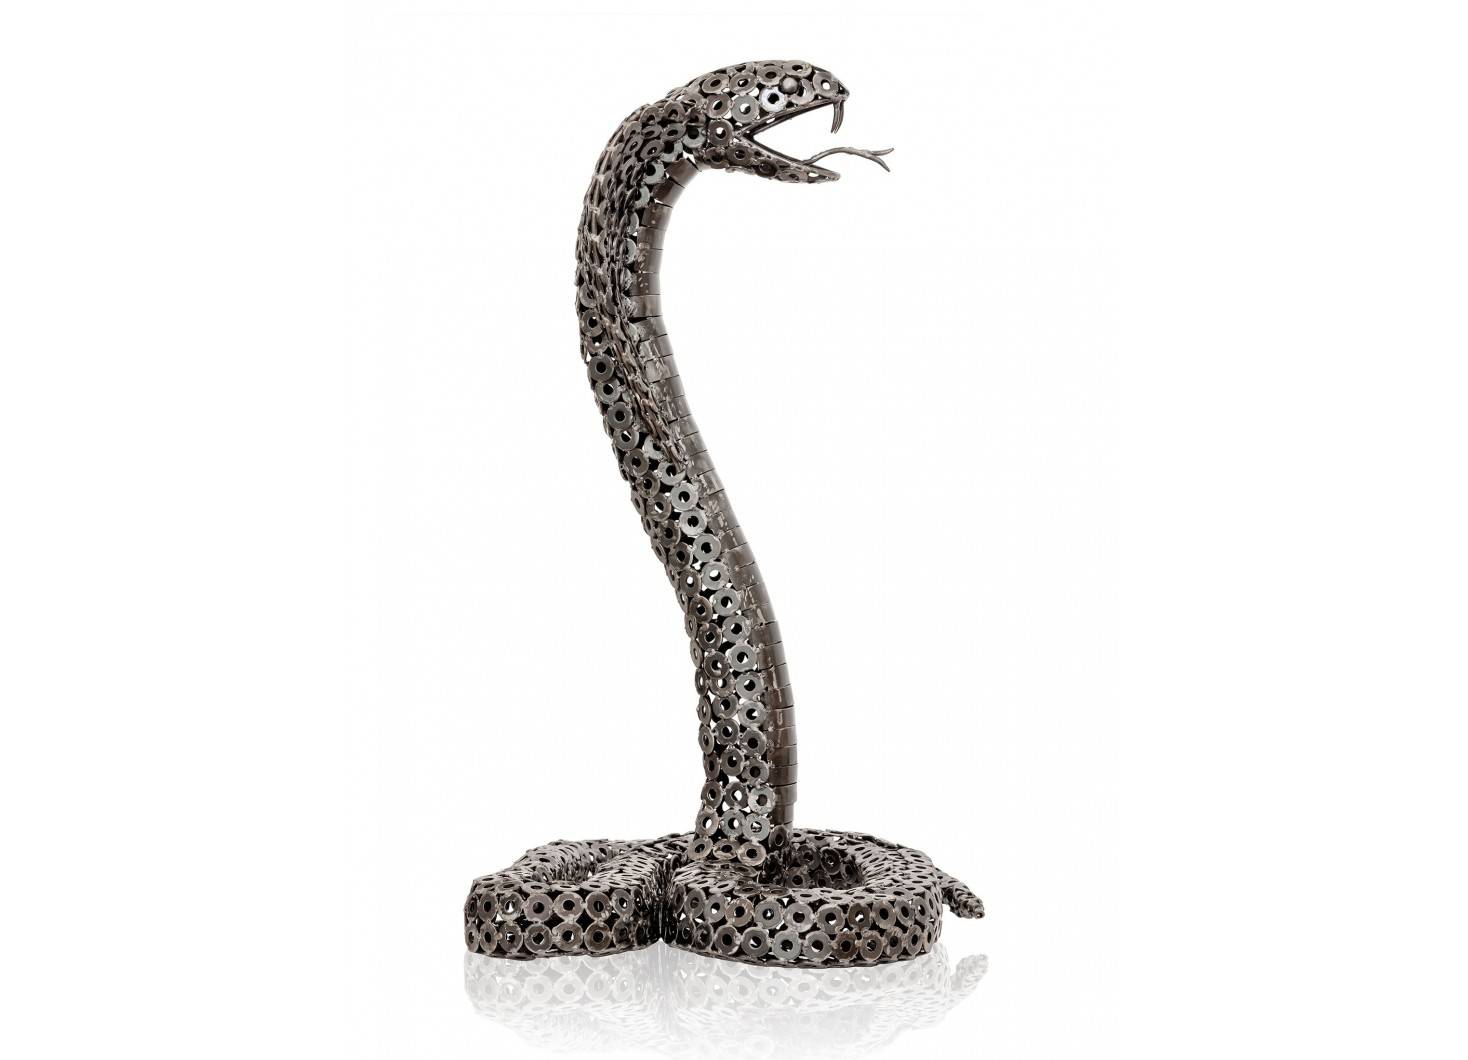 Sculpture de serpent en métal récupéré